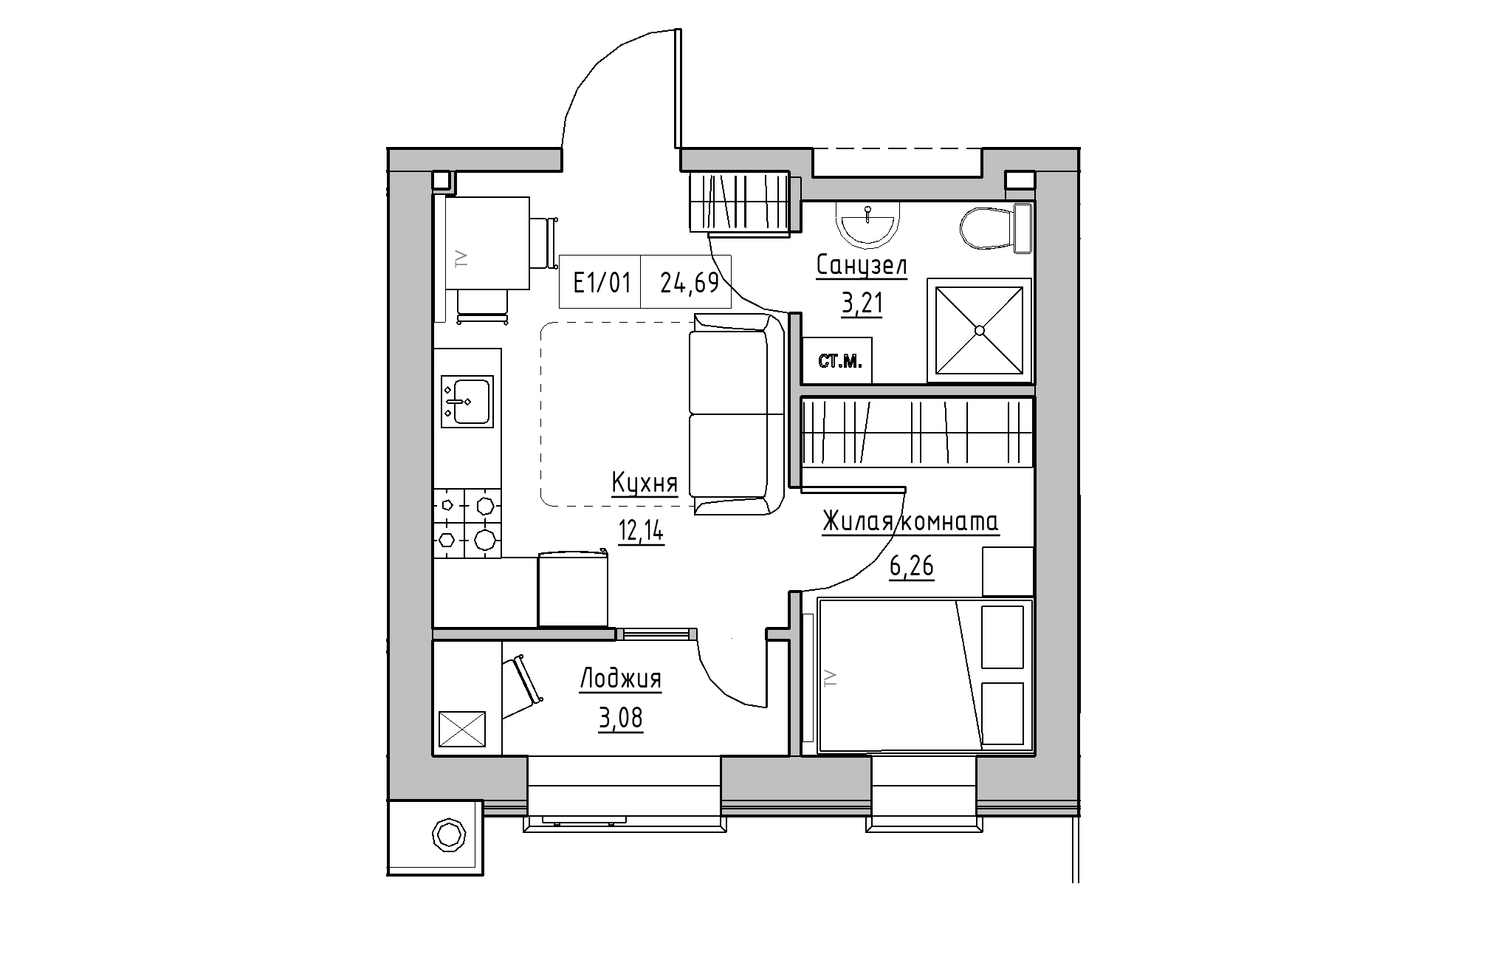 Планировка 1-к квартира площей 24.69м2, KS-013-02/0012.